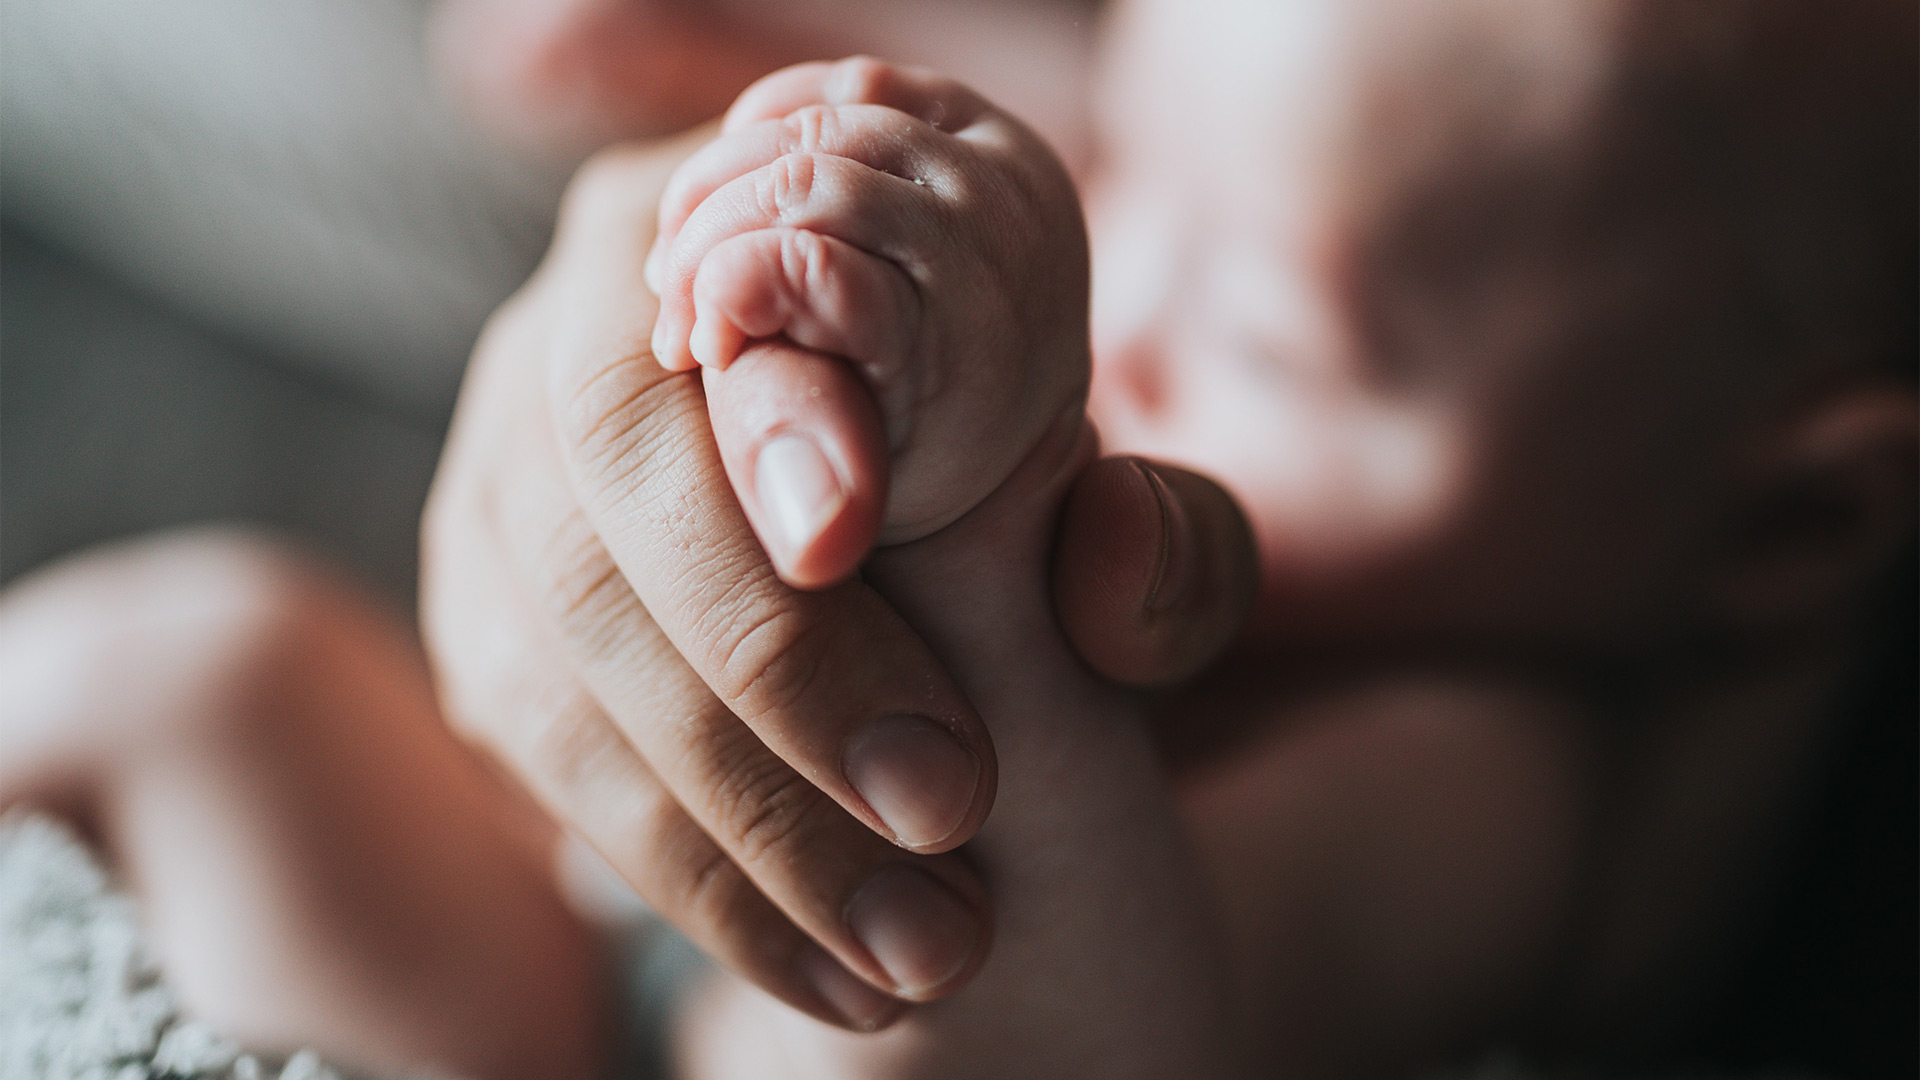 CENTOGENE Baby Hand image reference nathan-dumlao-EytWx3BOrwI-unsplash